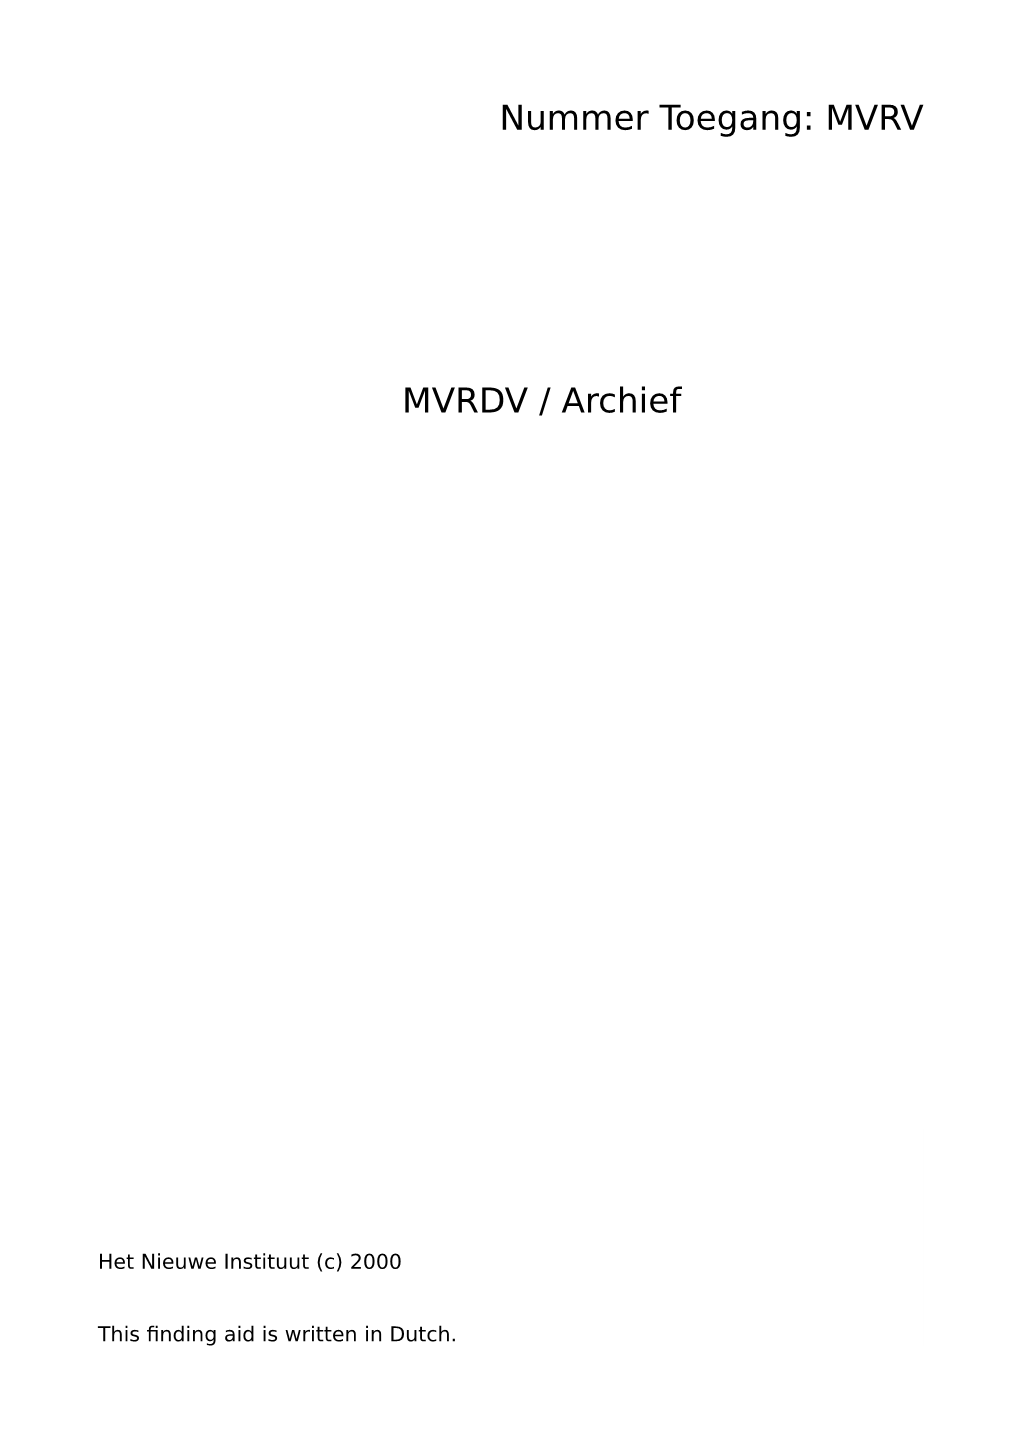 MVRDV / Archief